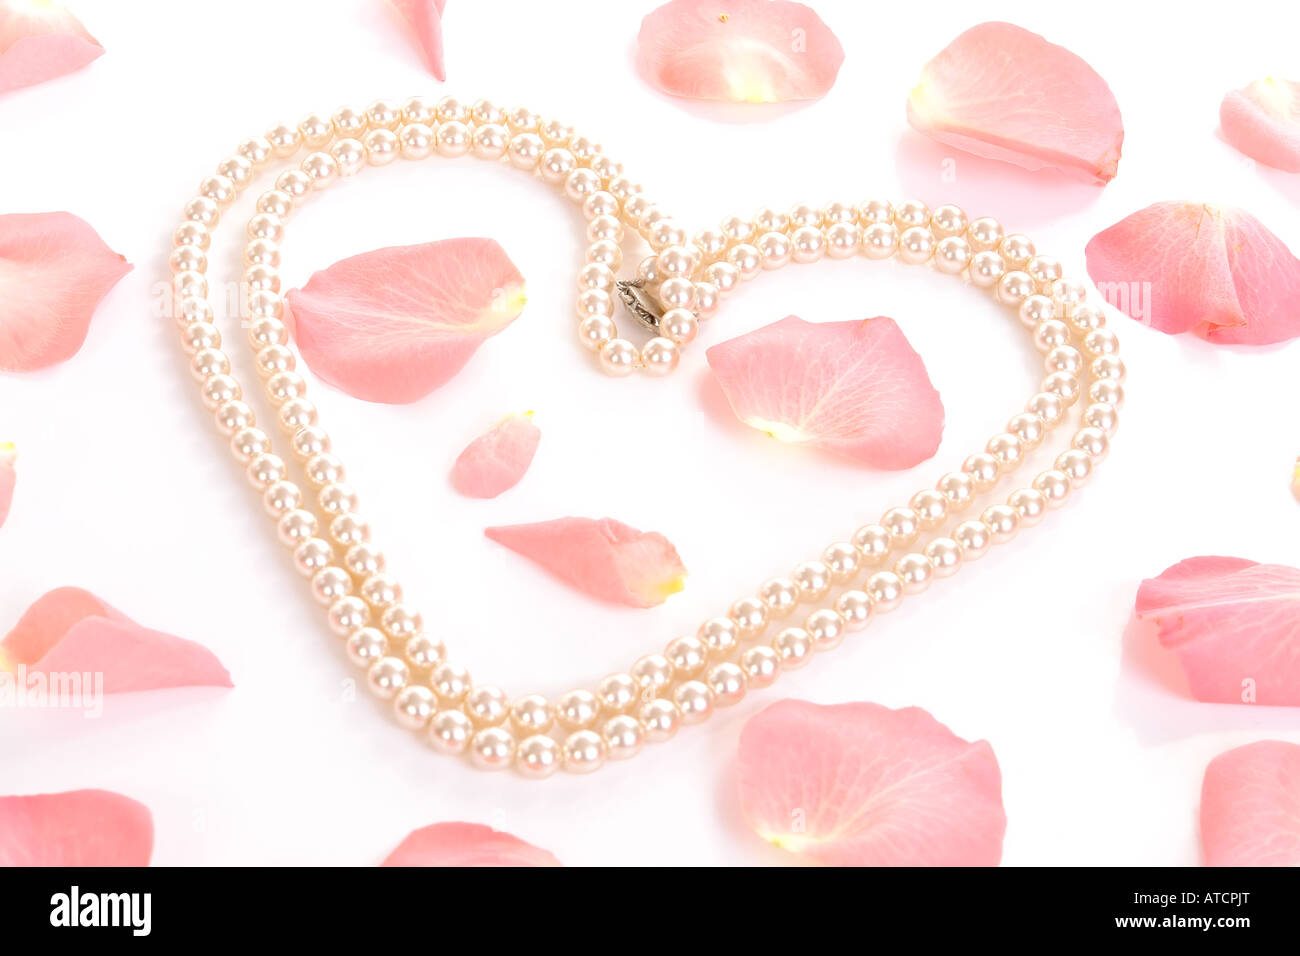 Forme de coeur créé par chaîne de perles parmi les pétales de roses éparpillées sur un fond blanc Banque D'Images